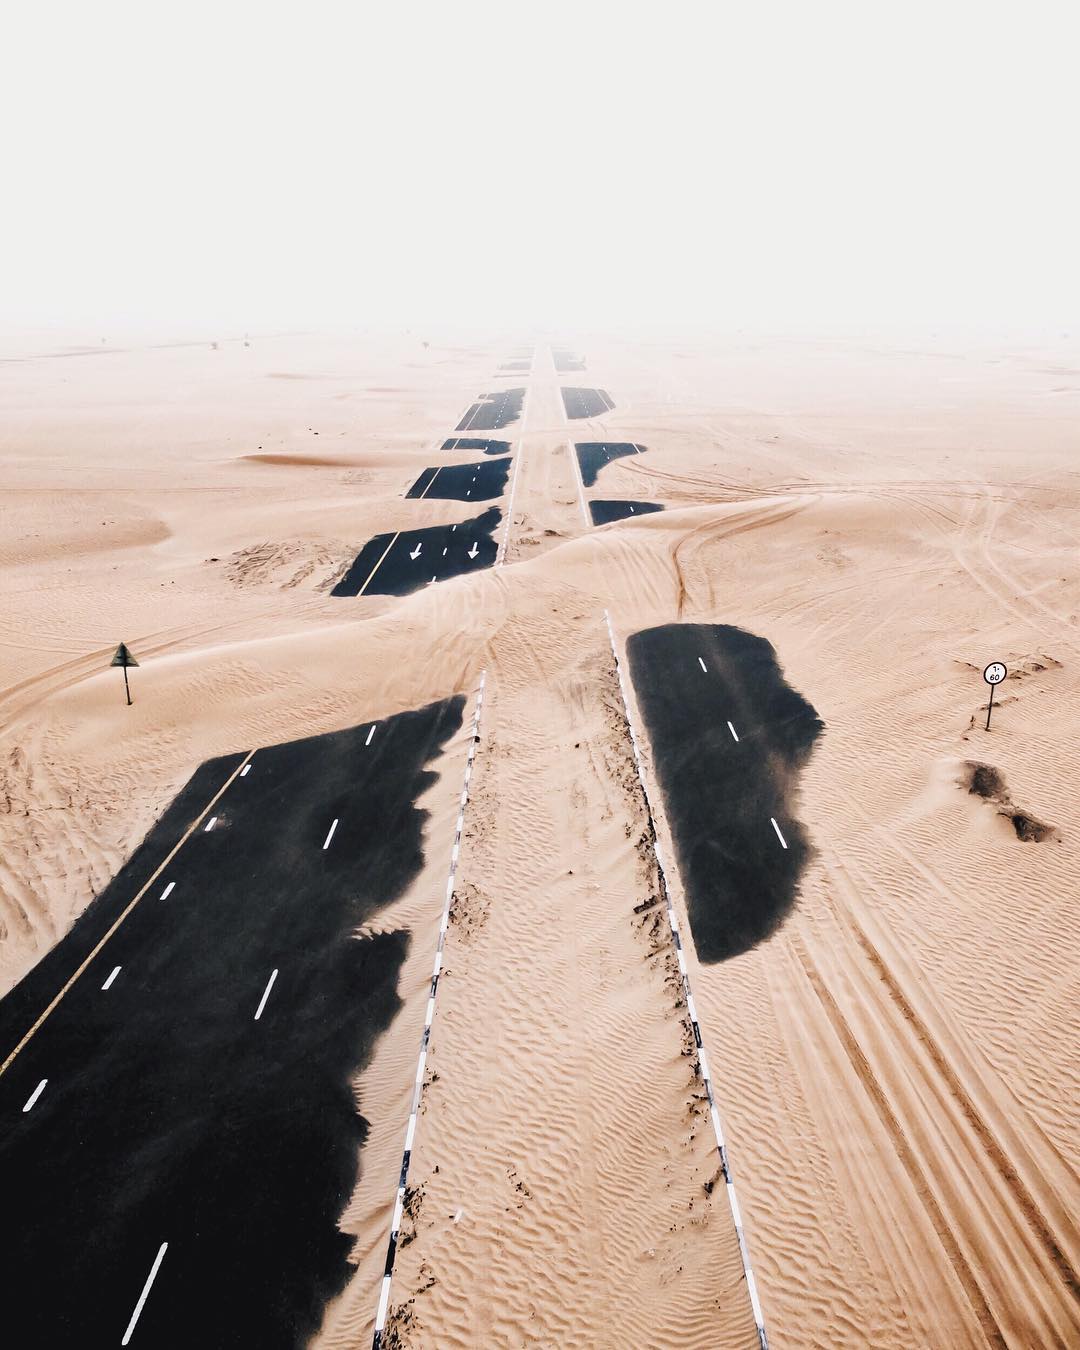 Irenaeus_Herok_Sandswept_Dubai_Highways_Moto-Mucci (7).jpg